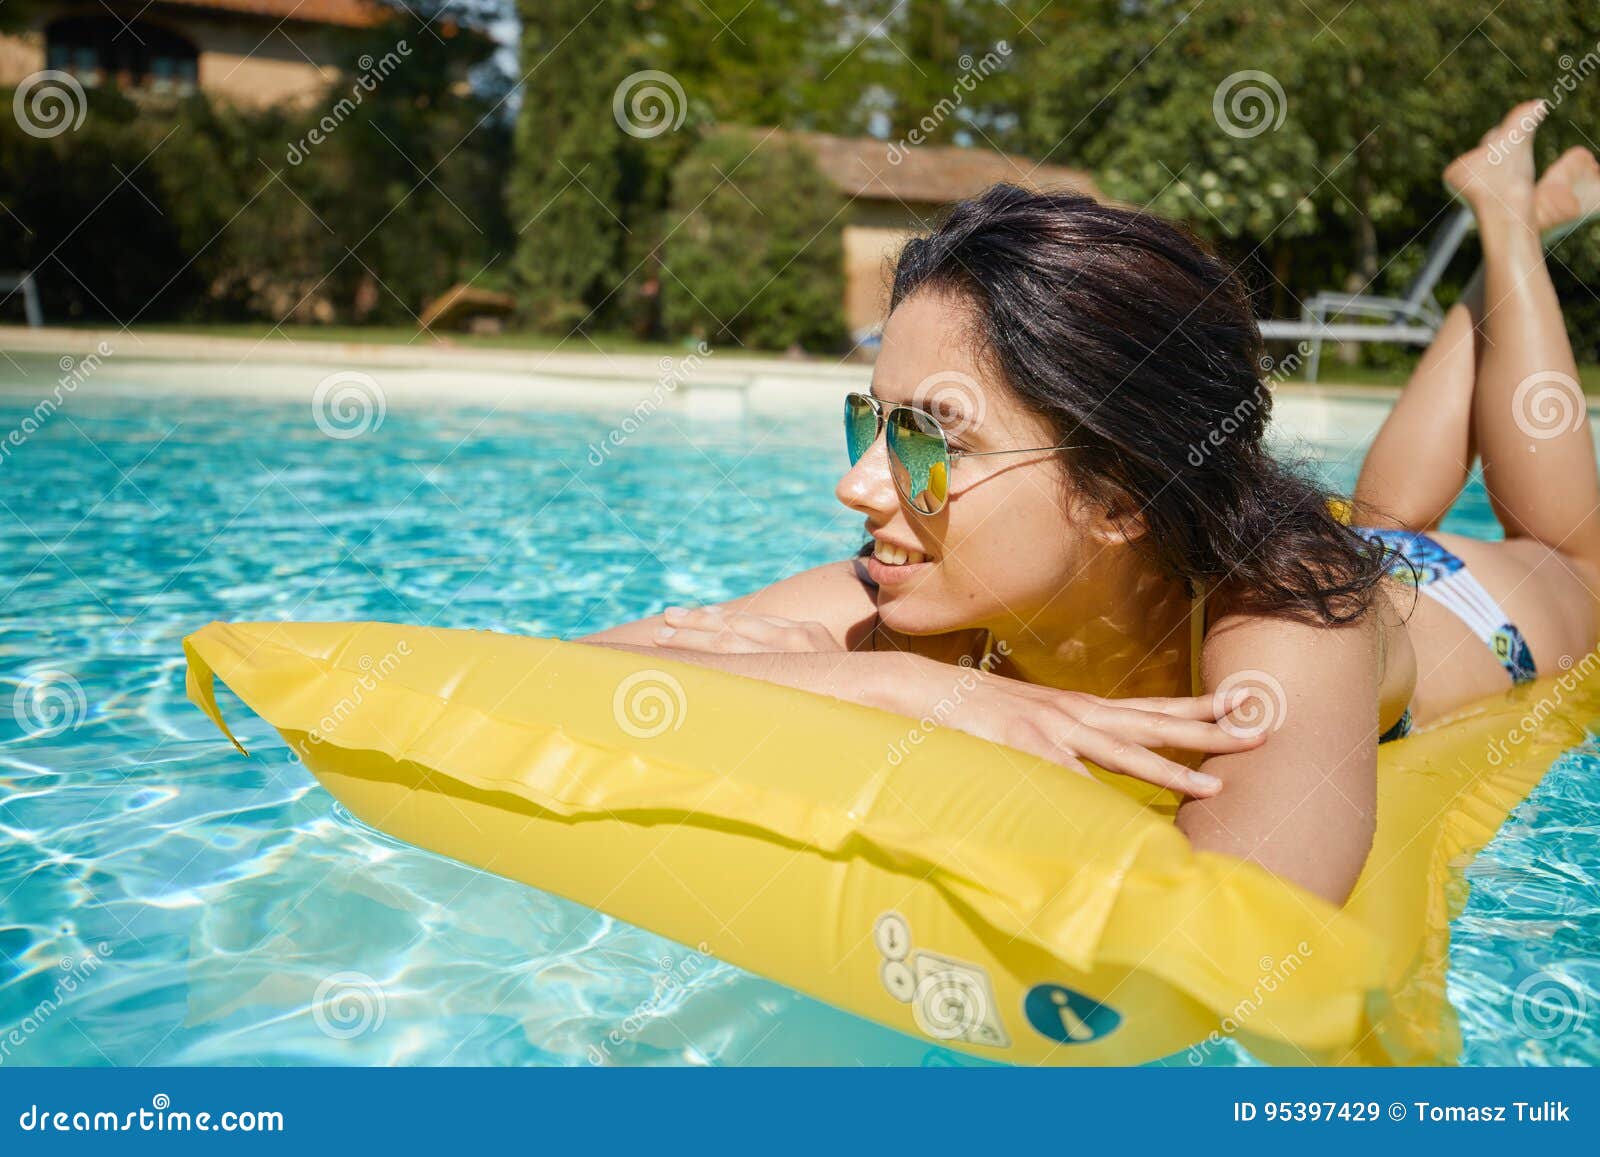 young woman sun bathing in spa resort swiming pool